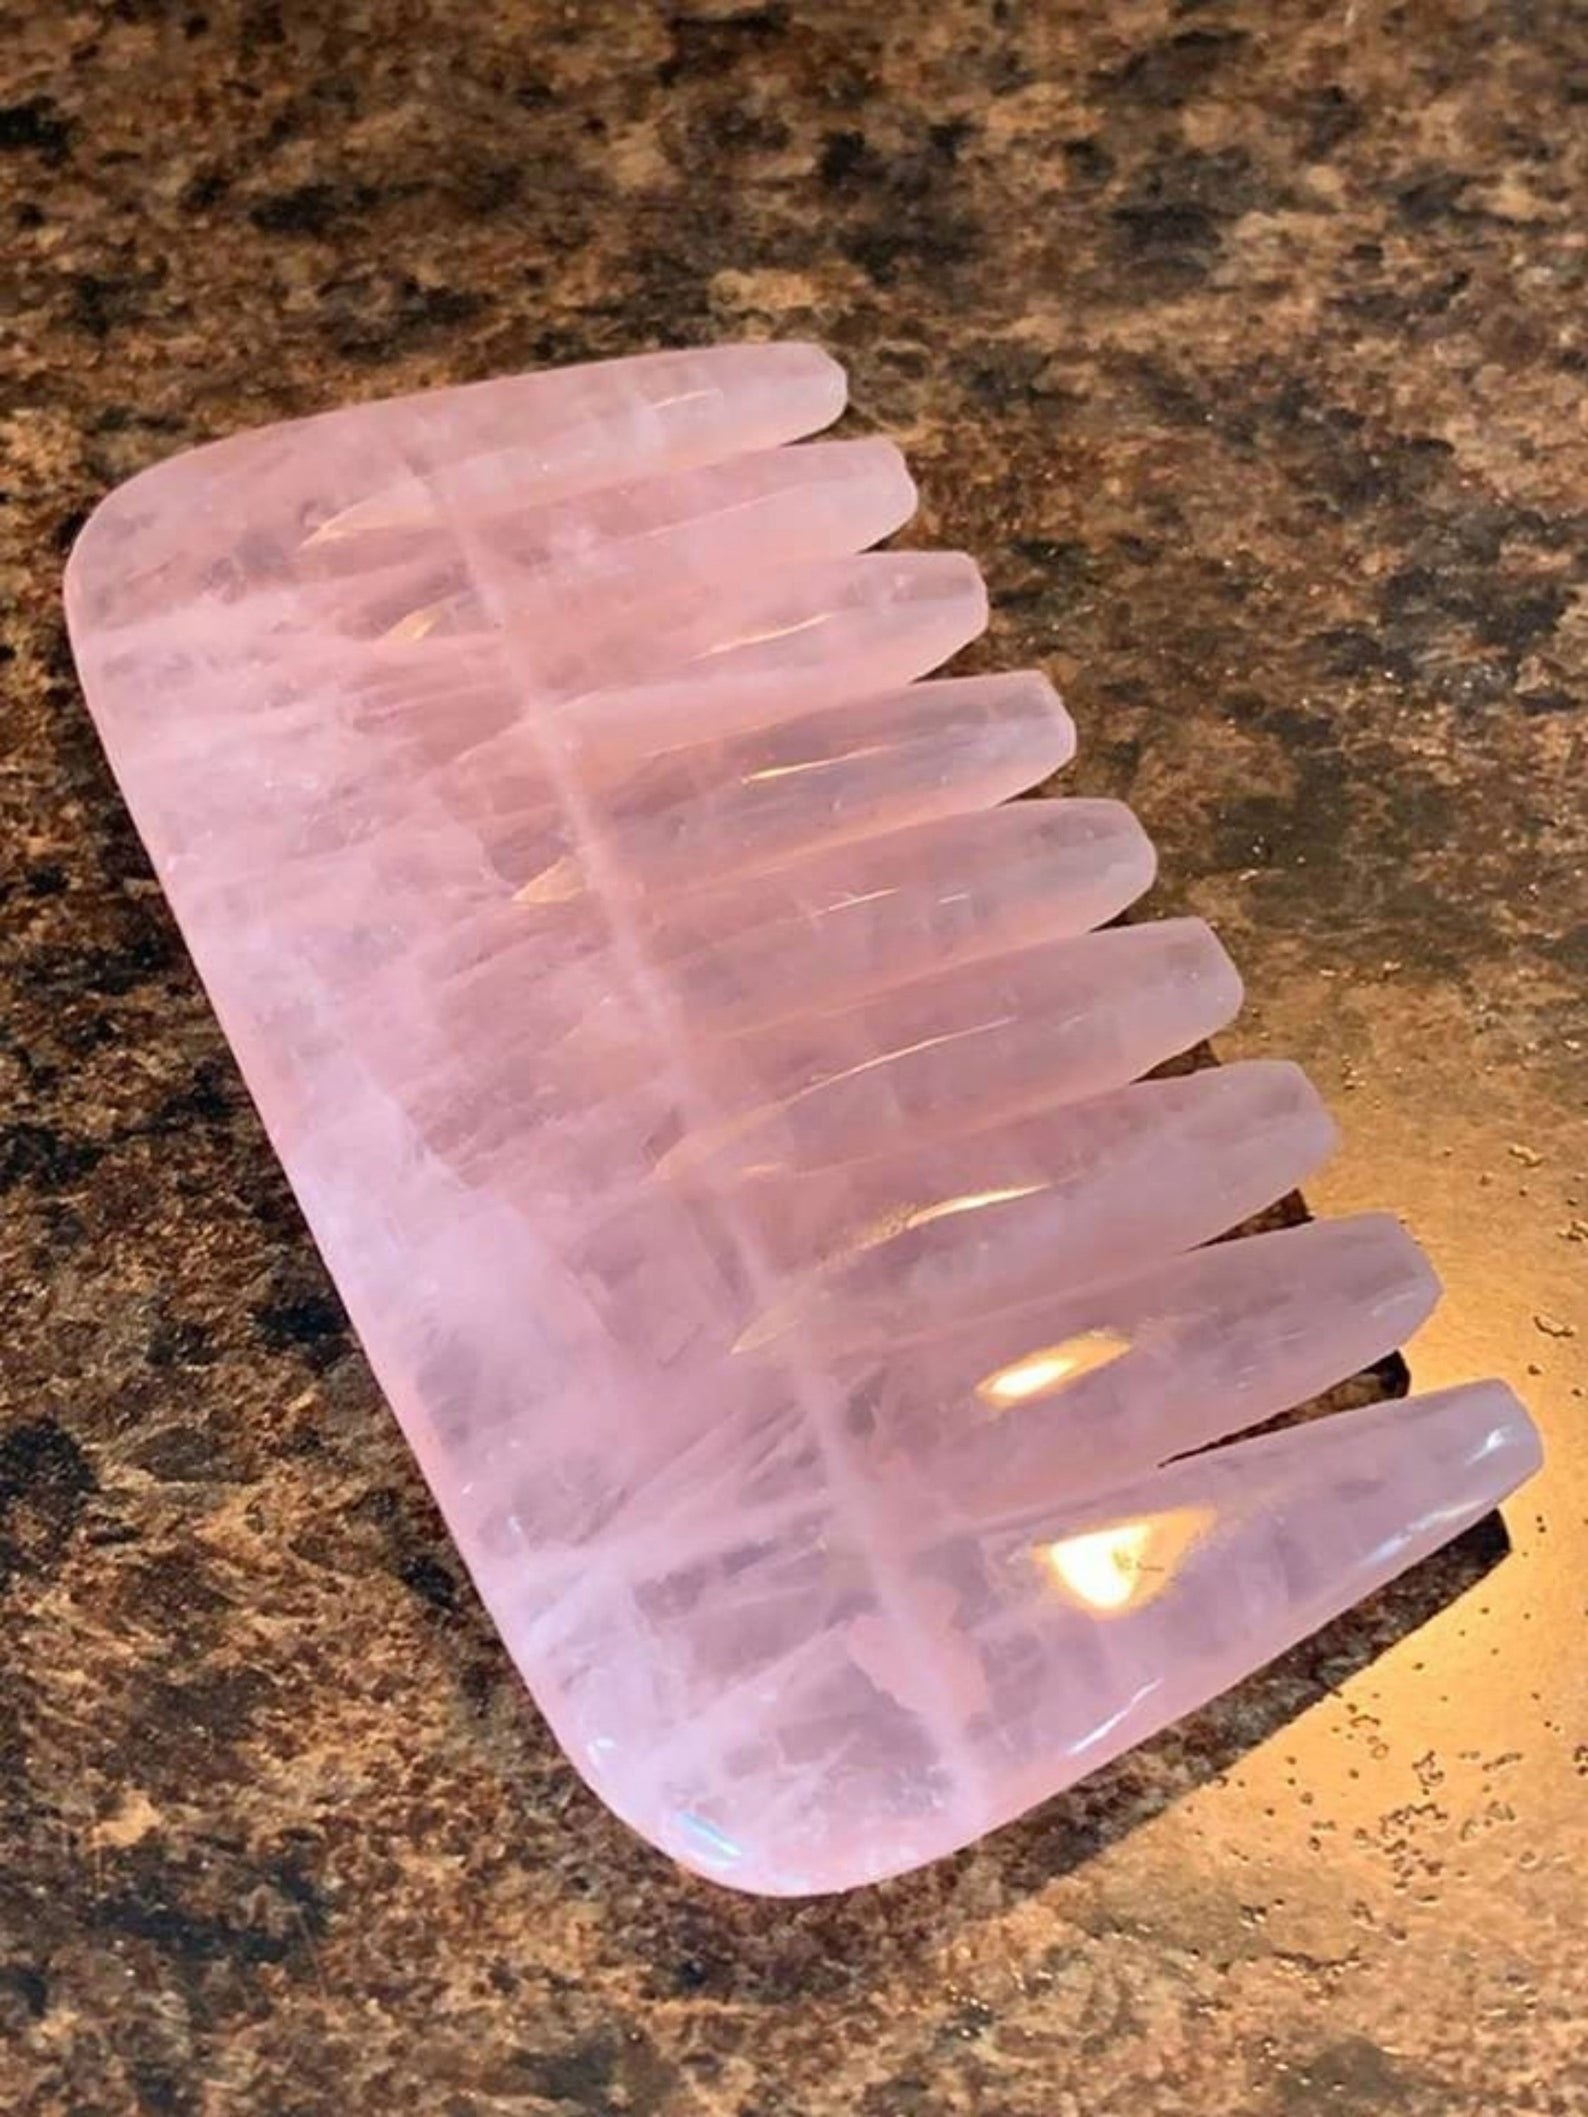 The pink rose quartz comb